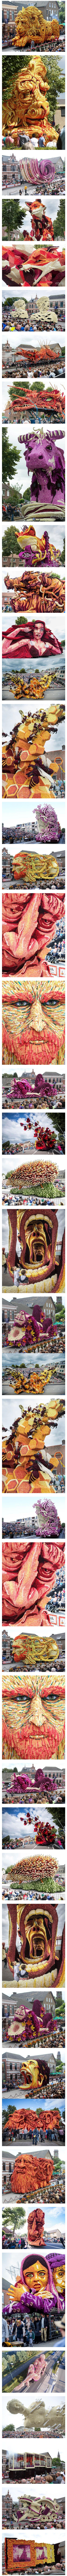 네덜란드 꽃축제의 위엄